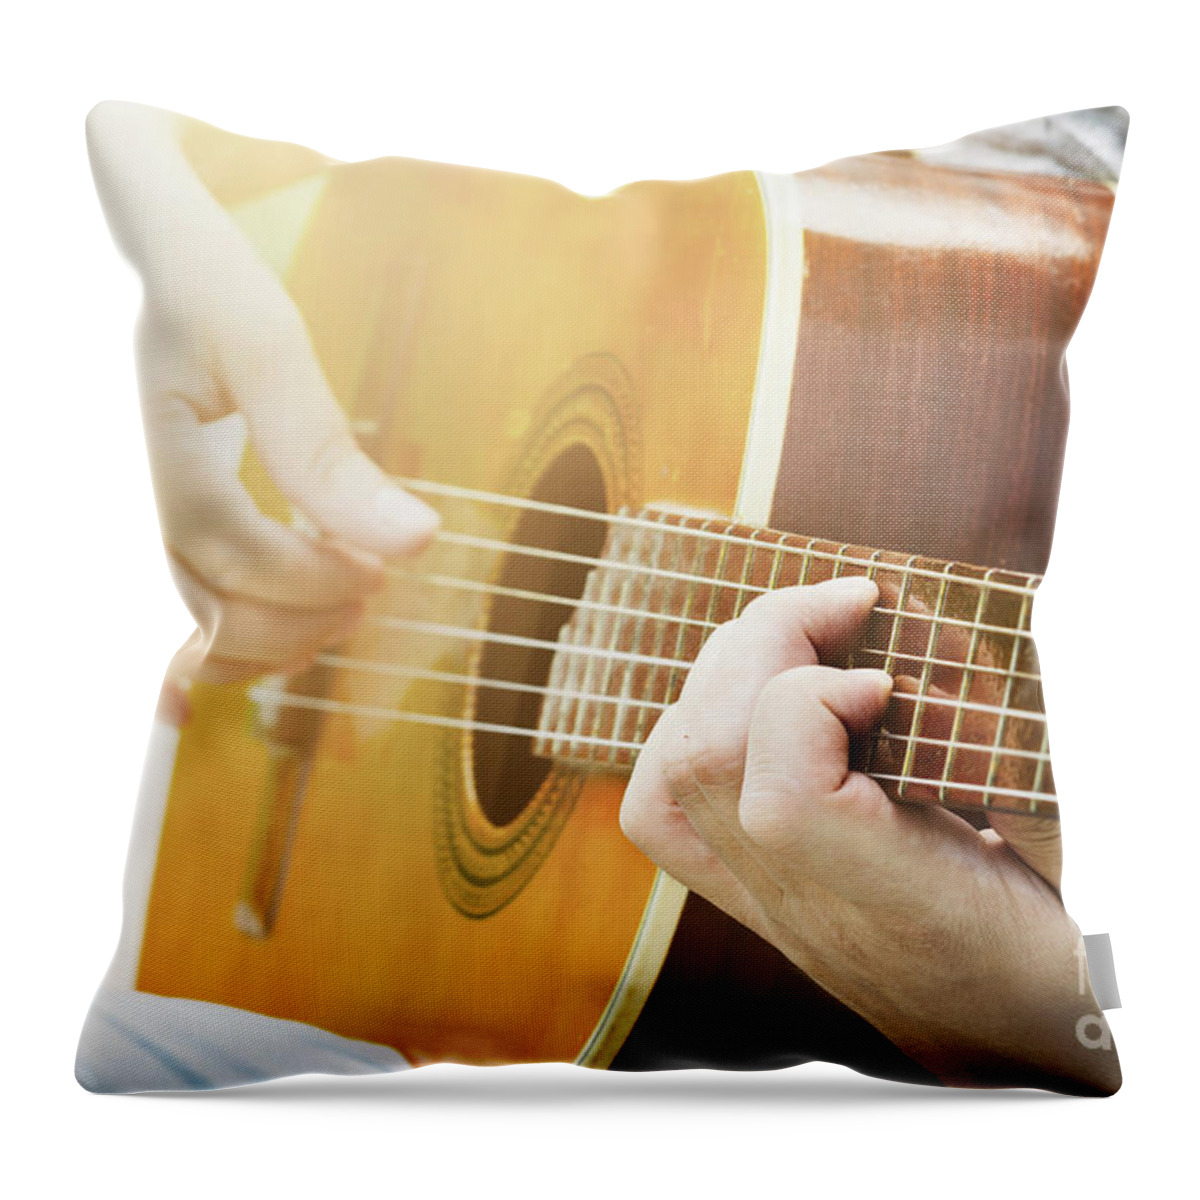 Guitar Throw Pillow featuring the photograph Guitar. Man plays the guitar closeup by Jelena Jovanovic